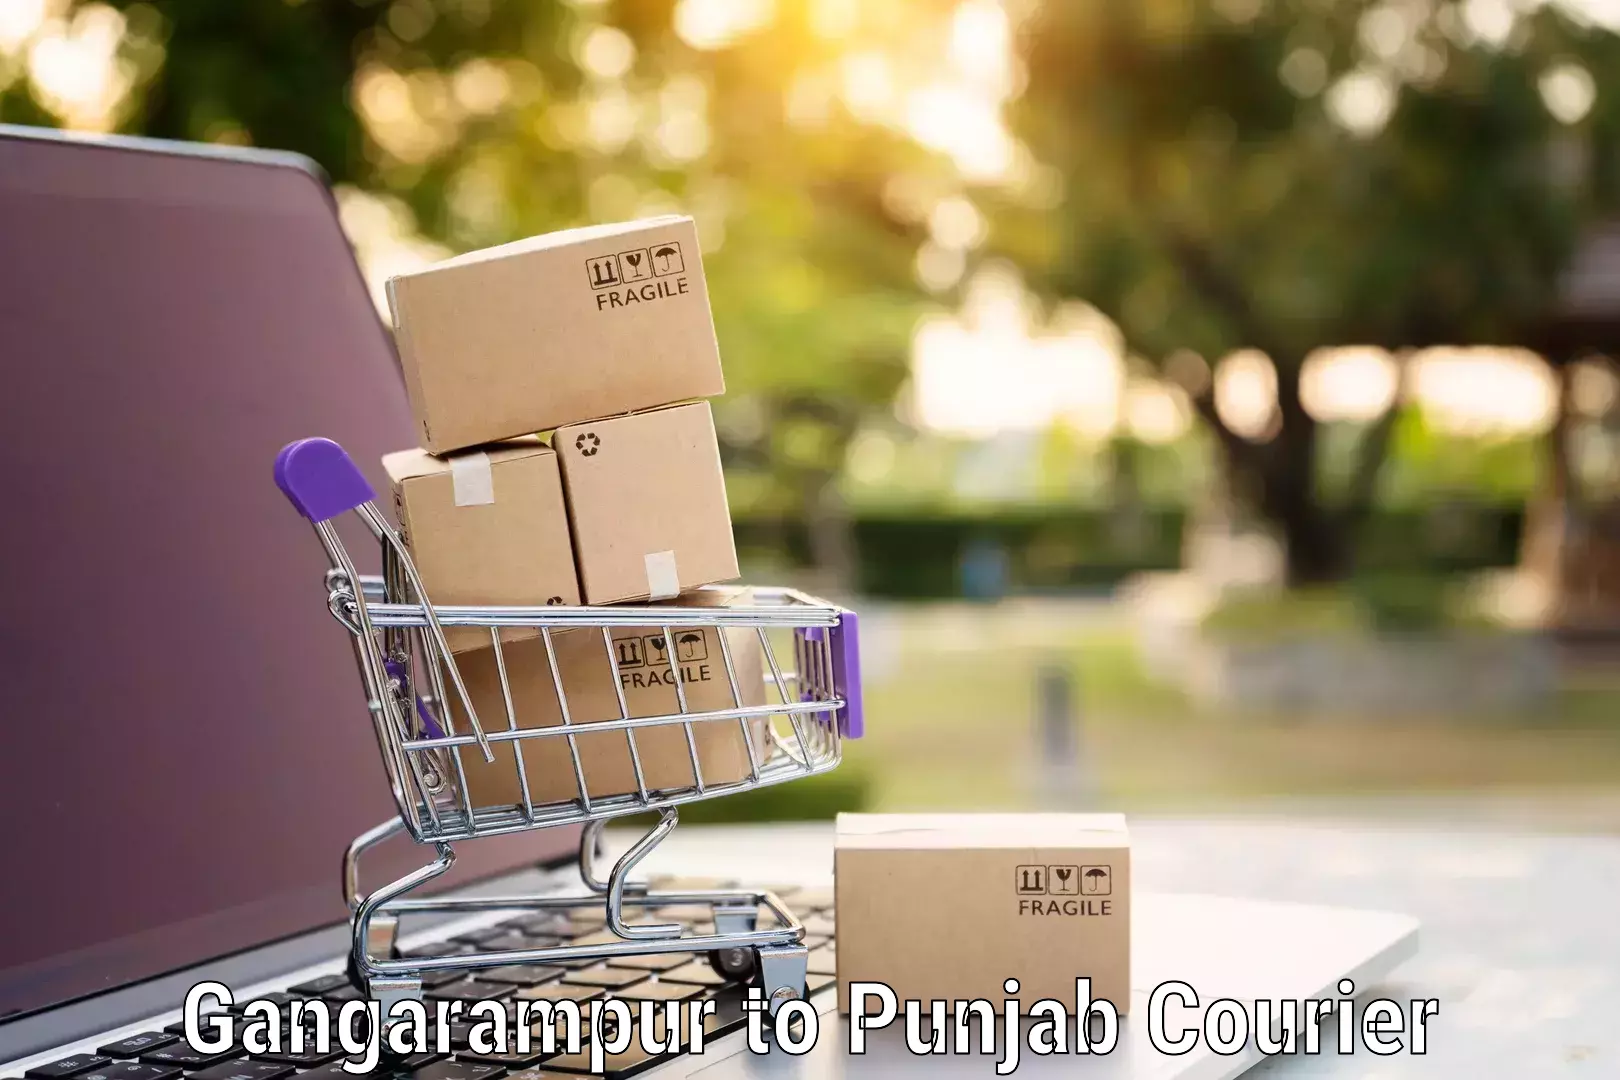 Full-service movers Gangarampur to Punjab